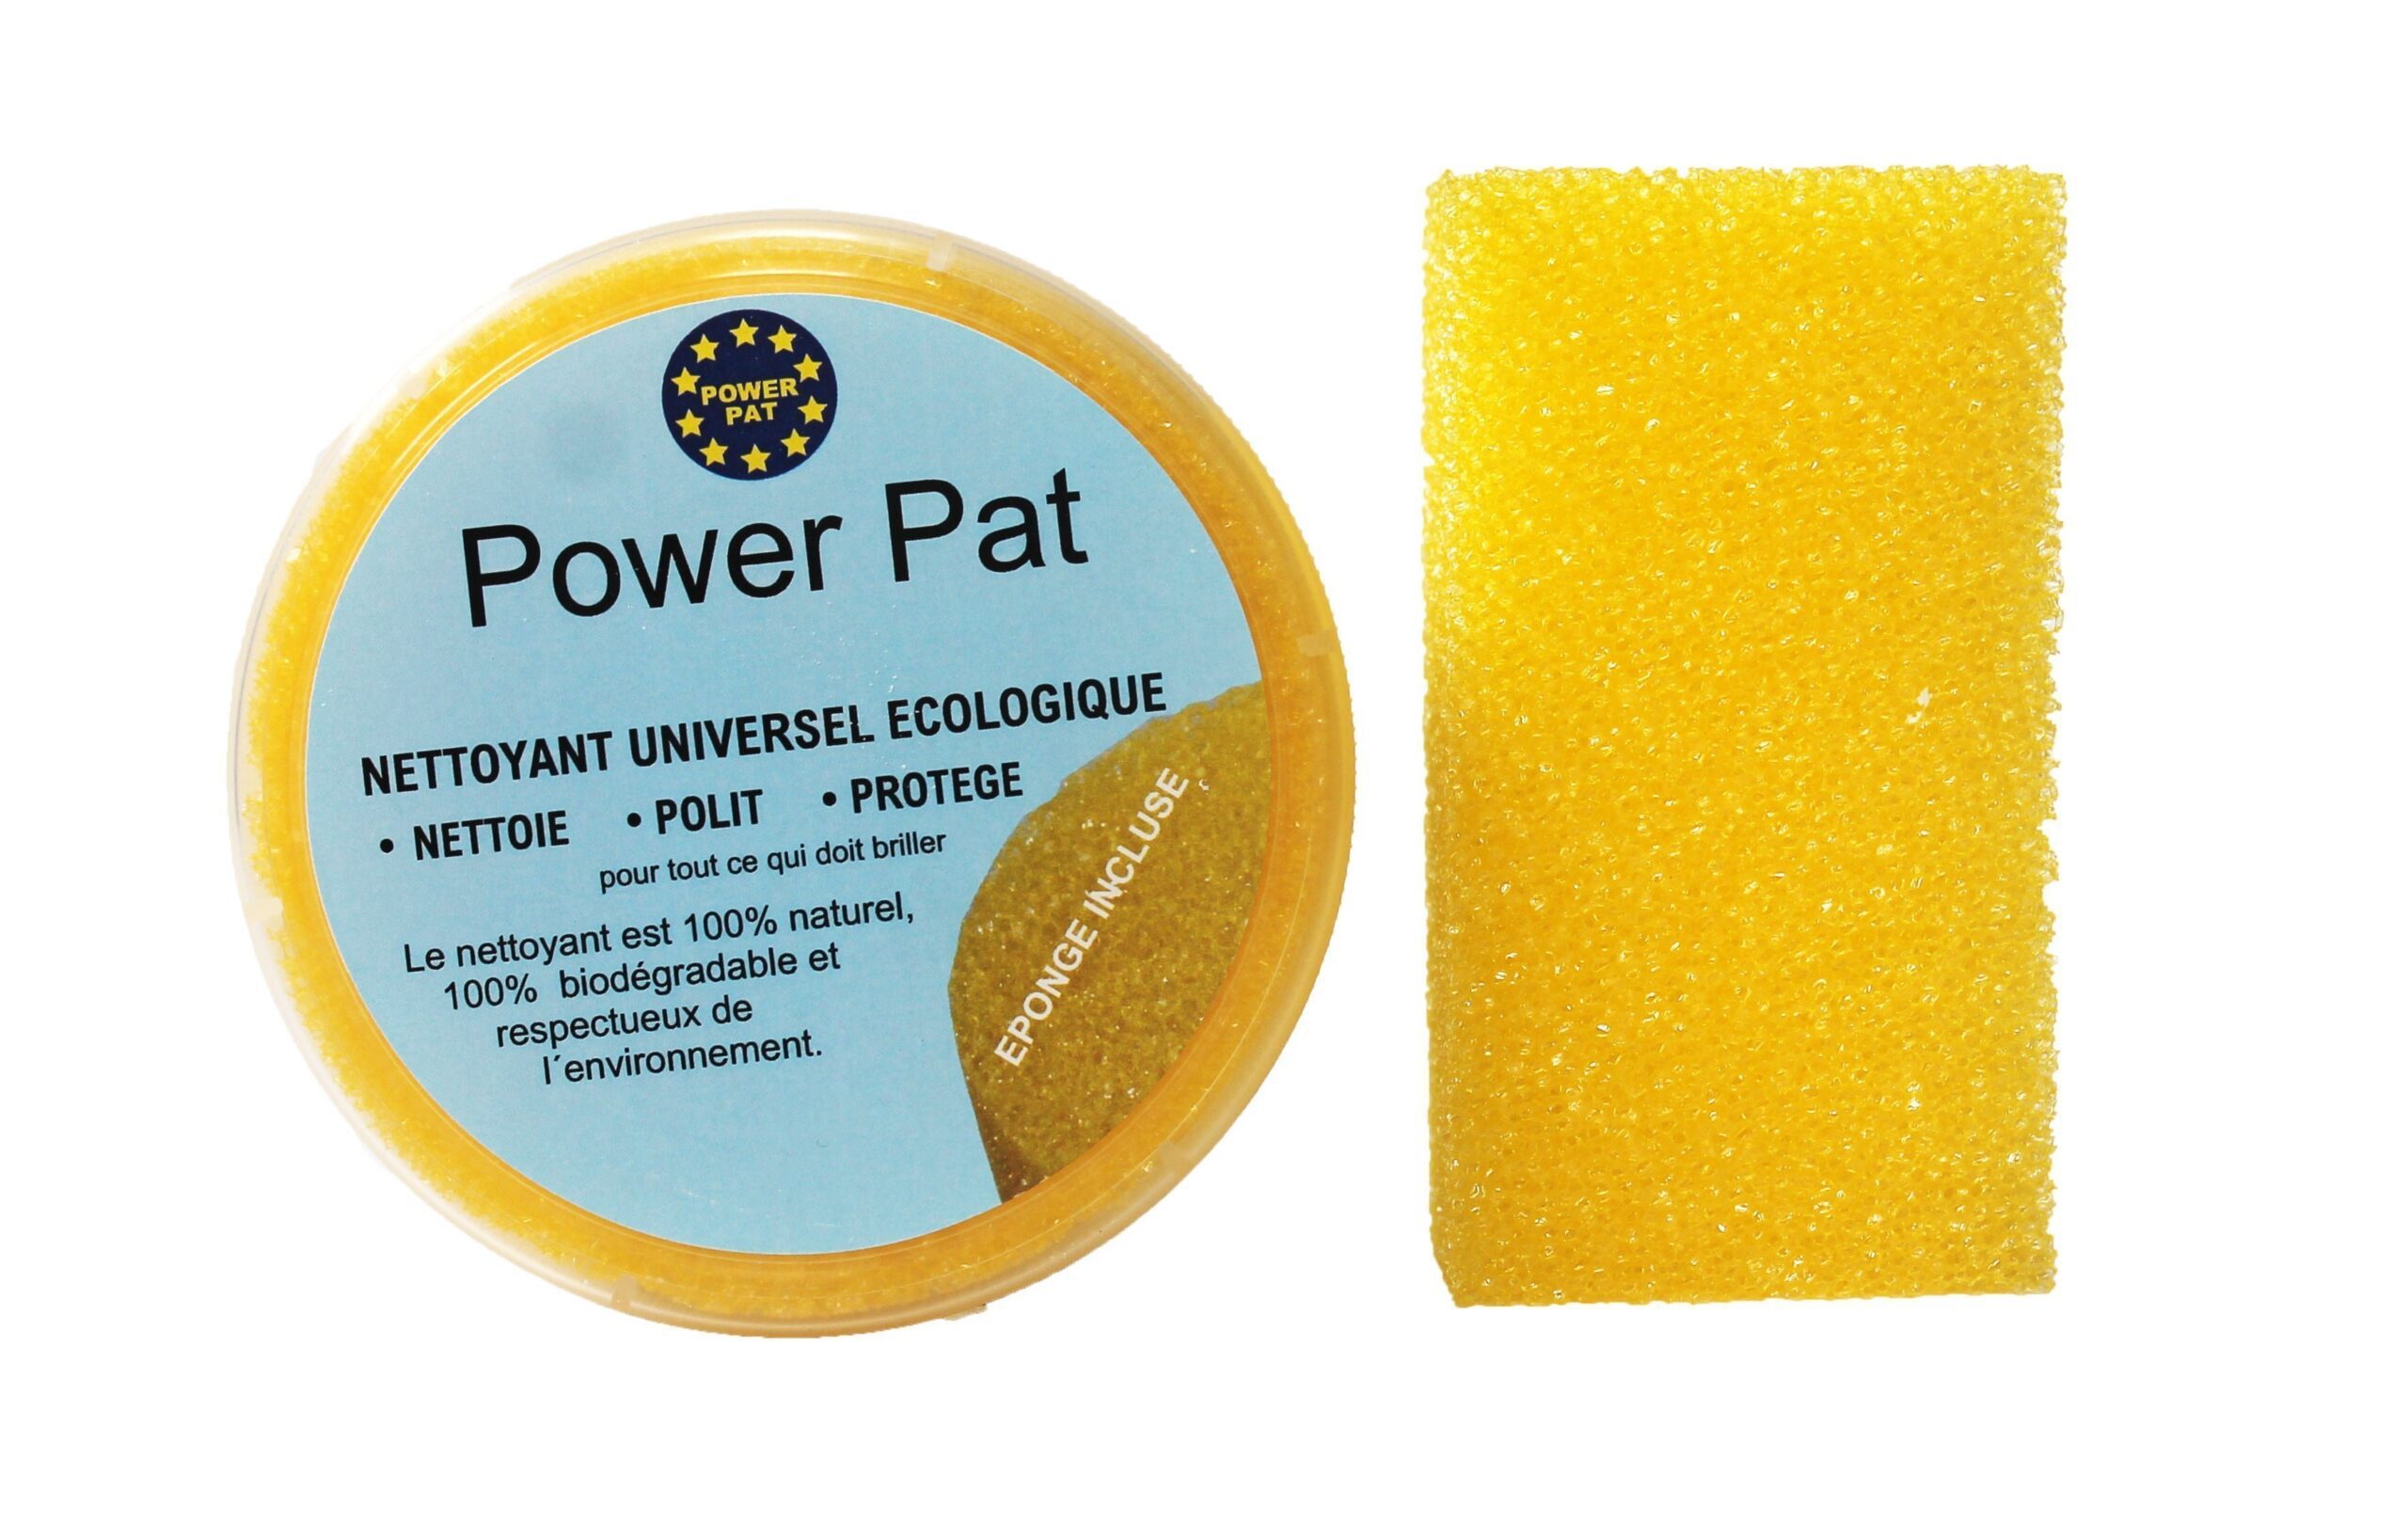 Pierre de nettoyage POWERPAT (l’authentique pierre blanche) - Power Pat -  Lessive biodégradable - Powerpat - Sel détachant